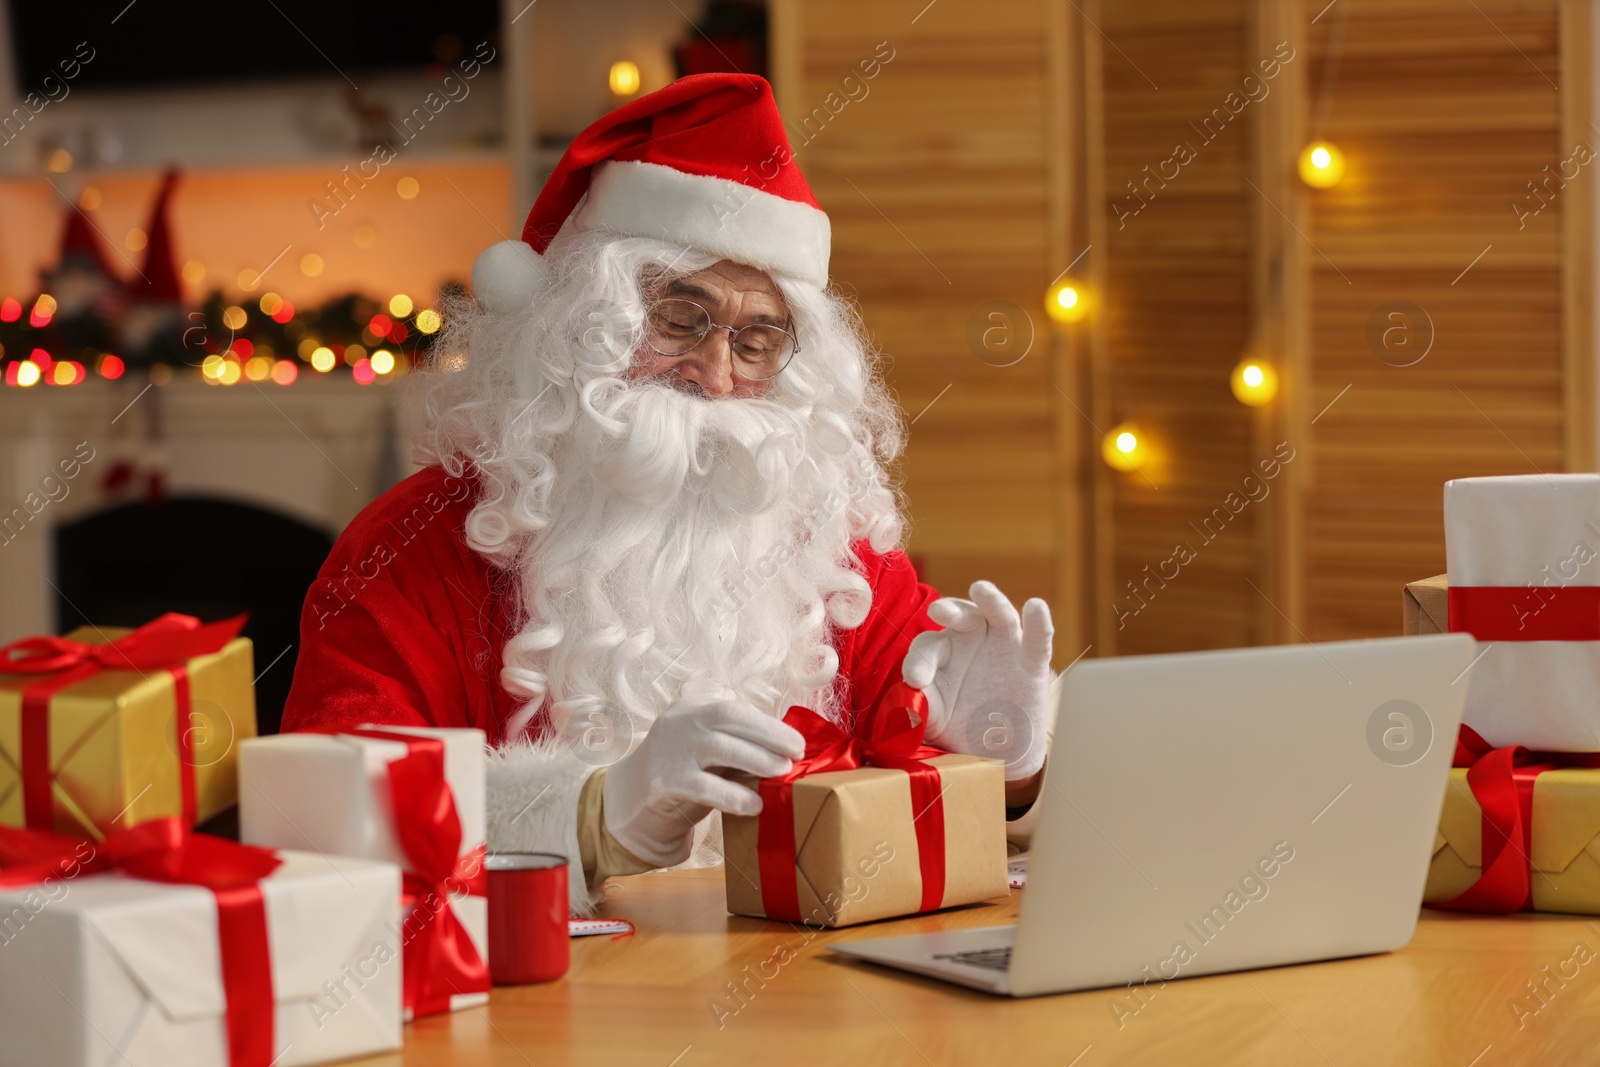 Photo of Santa Claus decorating Christmas gift with ribbon at home